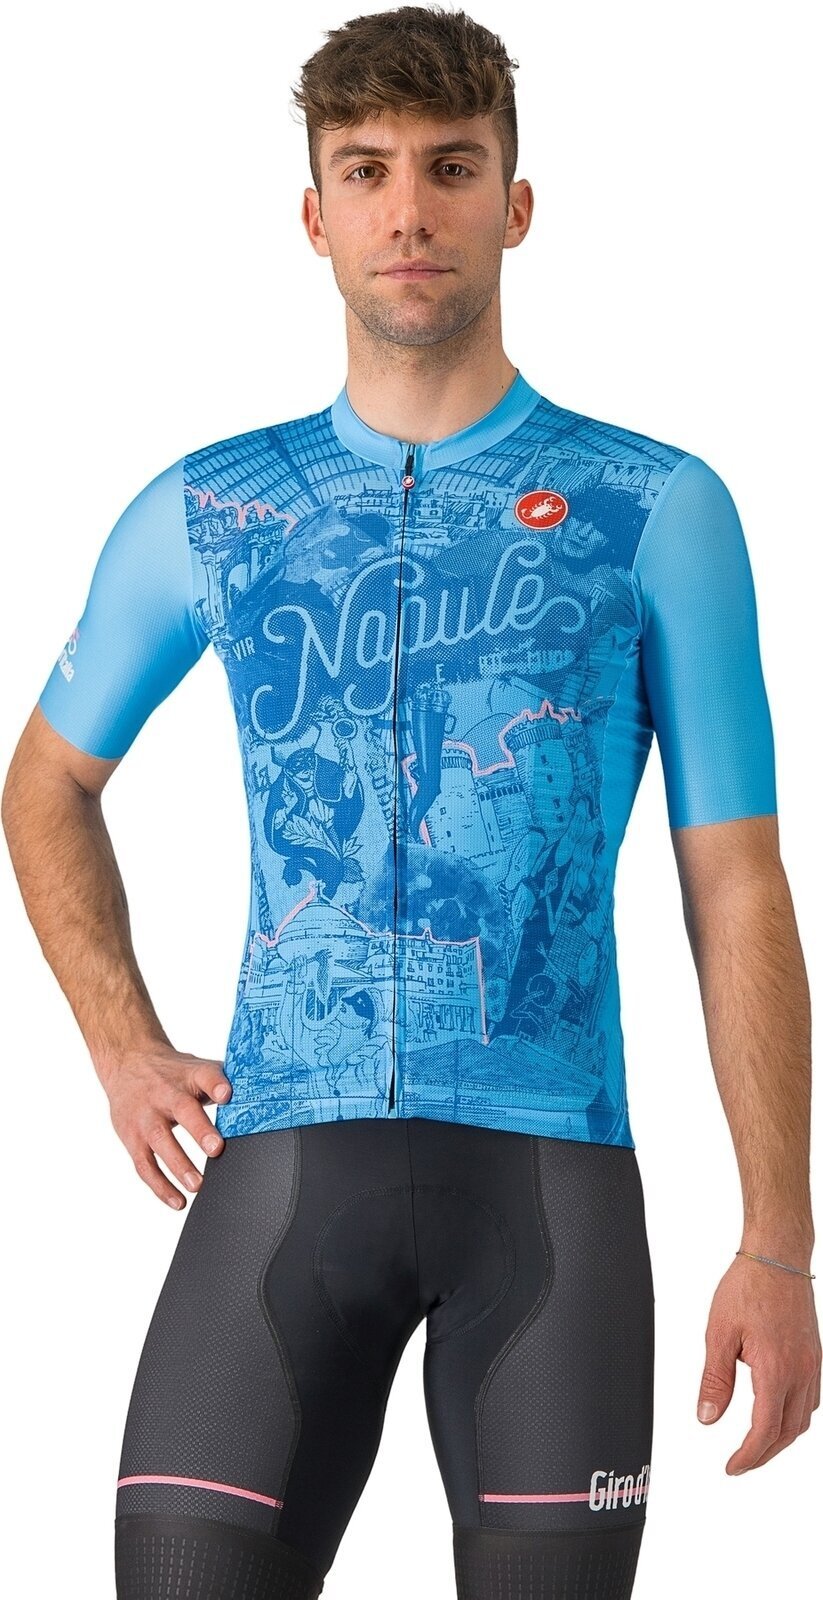 Jersey/T-Shirt Castelli Giro107 Napoli Jersey Azzurro Napoli M